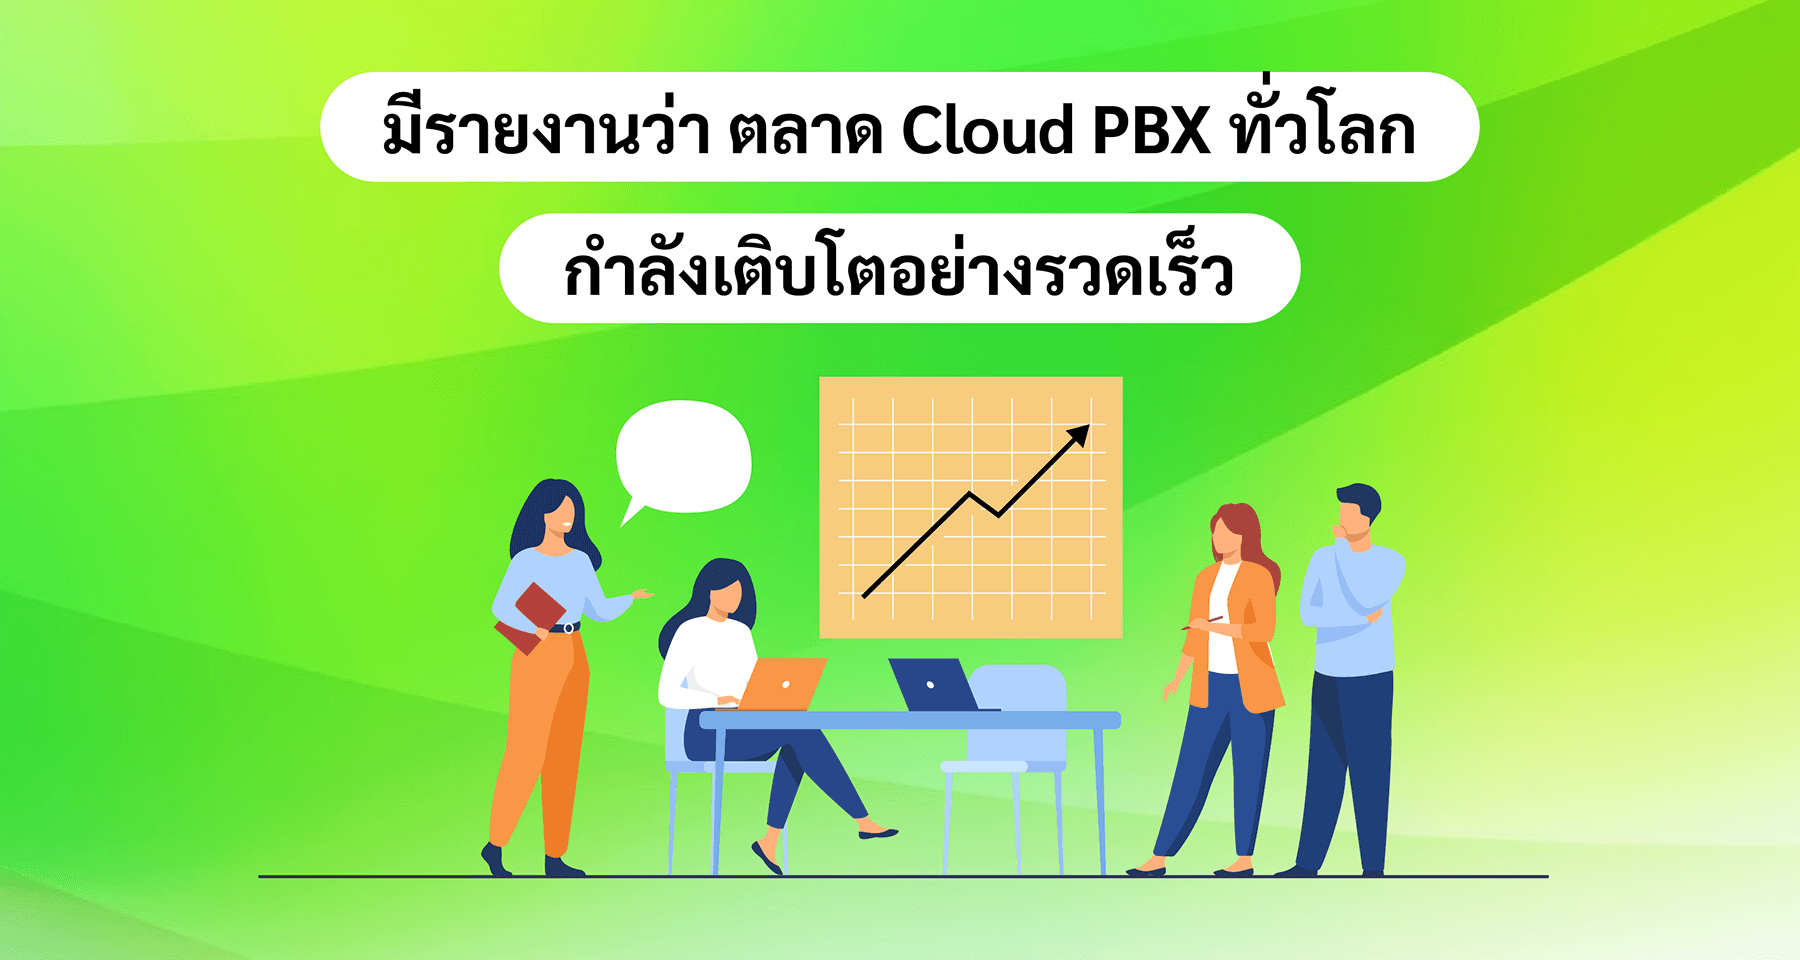 มีรายงานว่า ตลาด Cloud PBX ทั่วโลกกำลังเติบโตอย่างรวดเร็ว